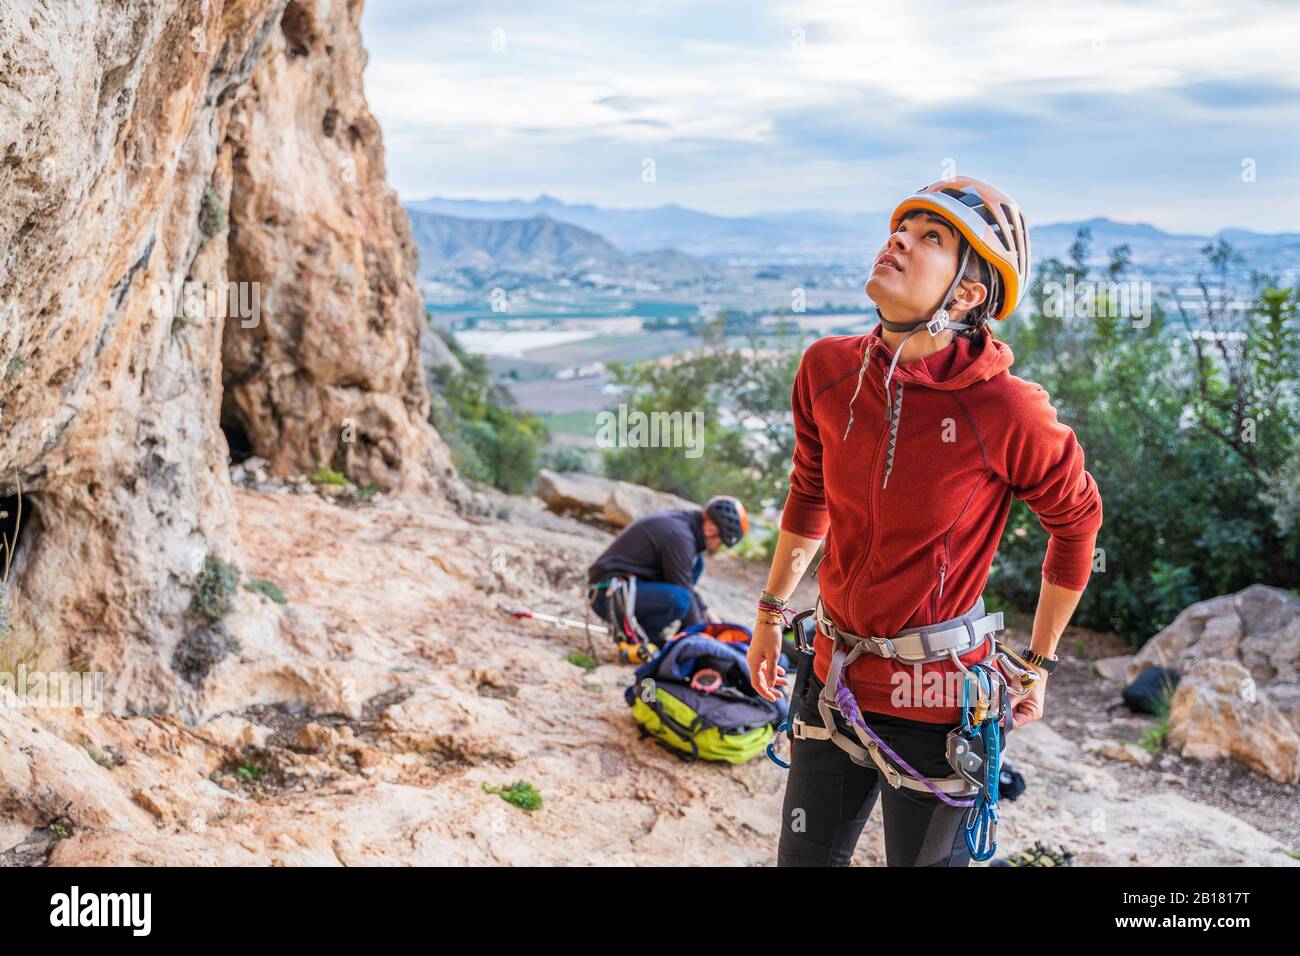 Mujer escaladora preparándose mirando hacia arriba la cara de la roca Foto de stock